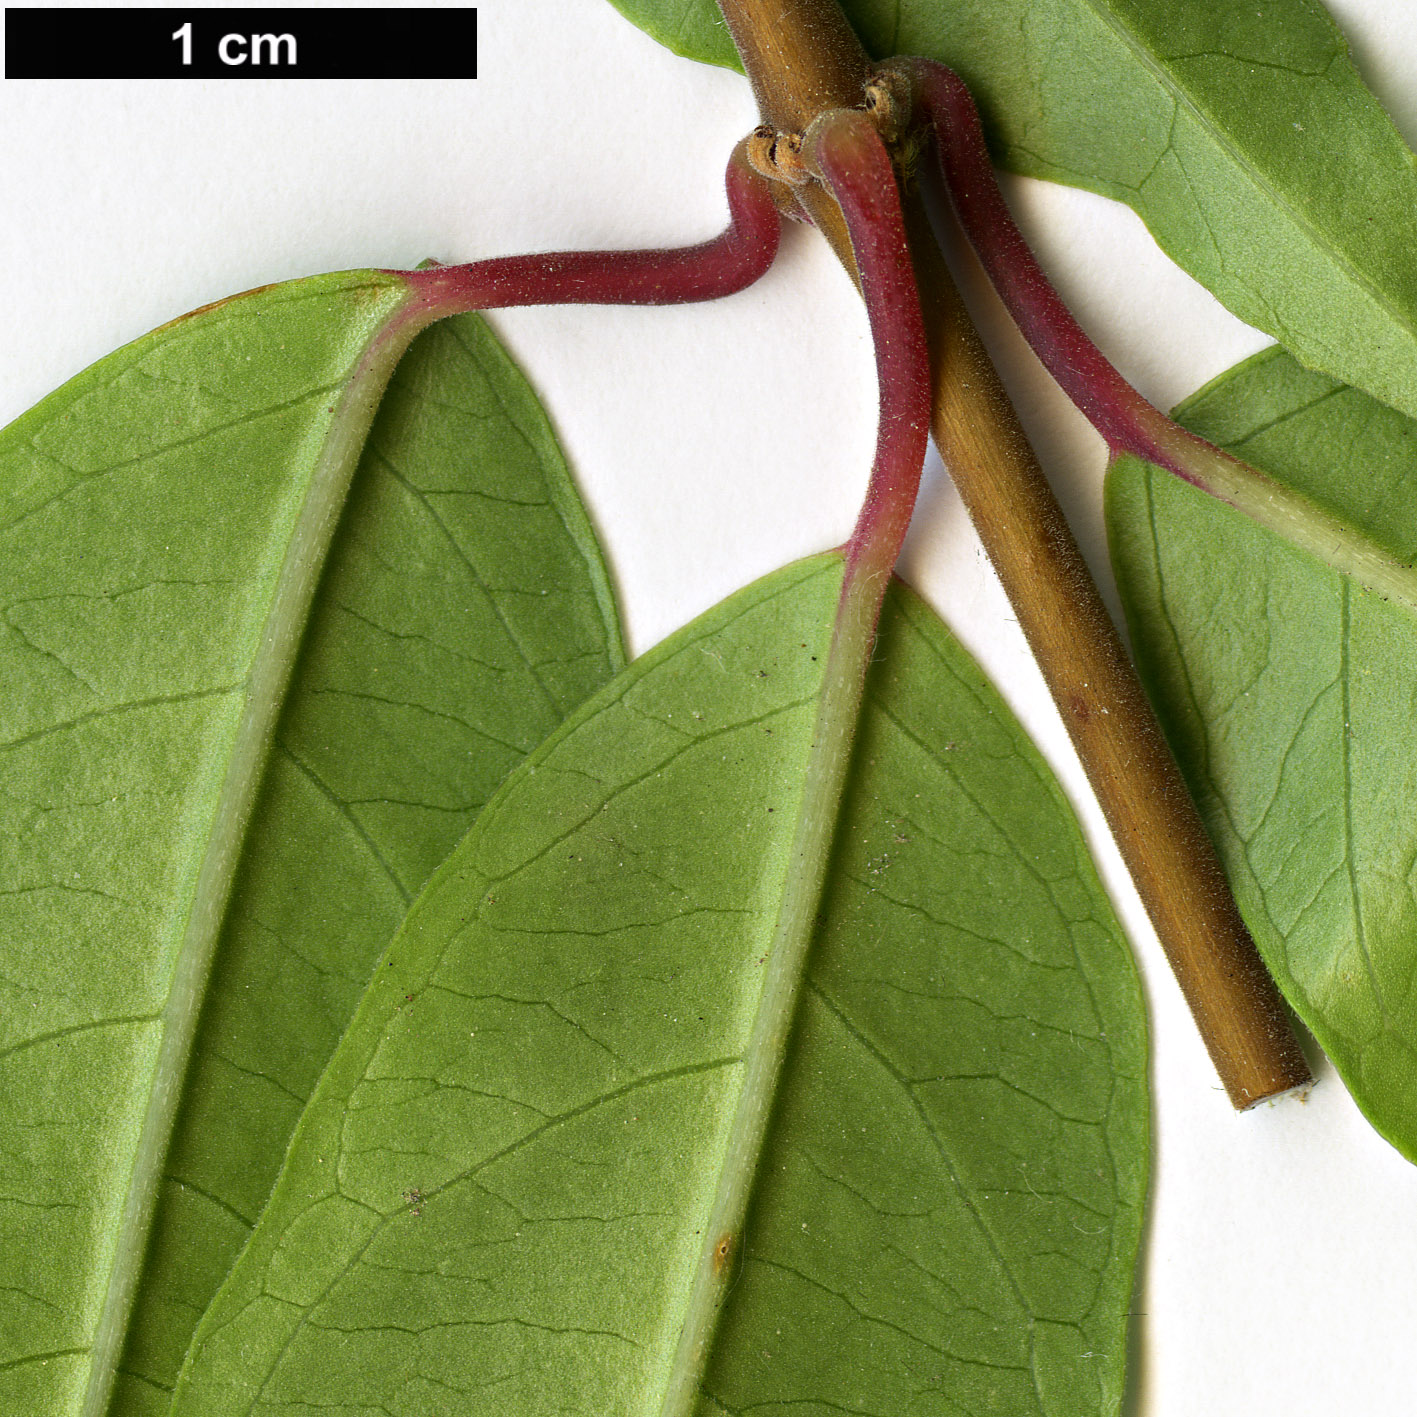 High resolution image: Family: Onagraceae - Genus: Fuchsia - Taxon: regia - SpeciesSub: subsp. serrae